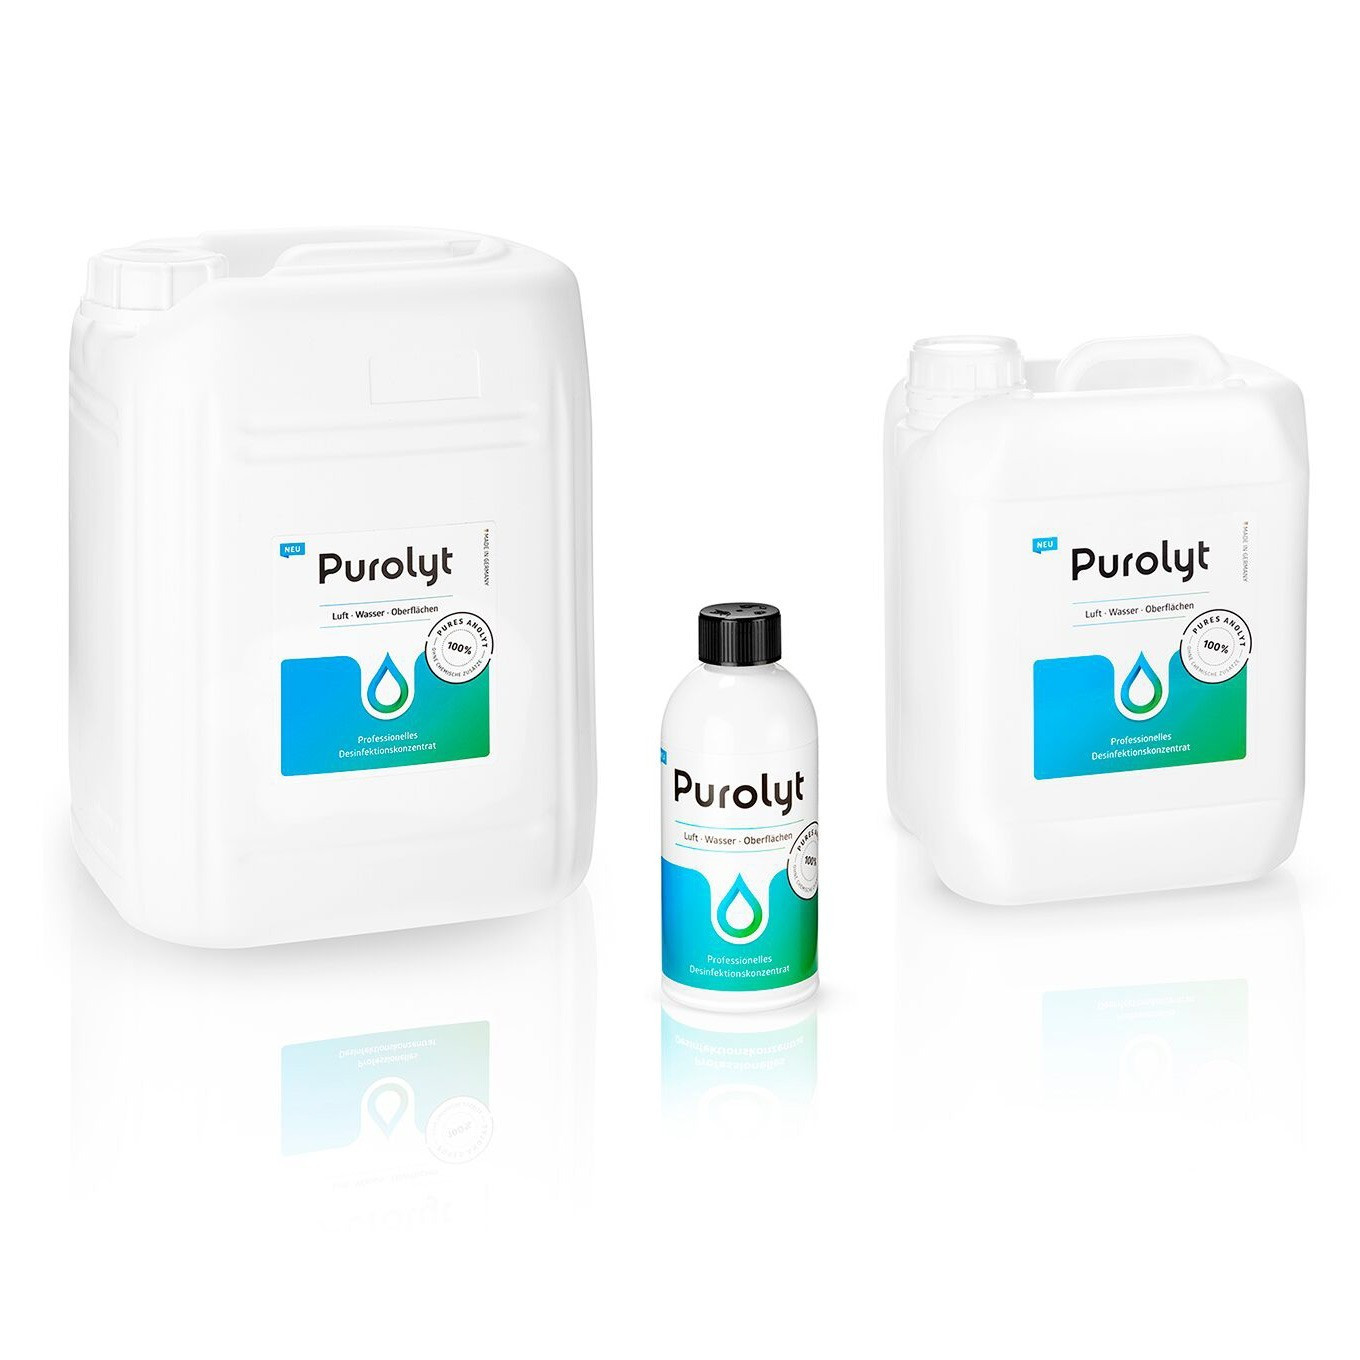 Purolyt - Disinfettante liquido professionale - 11L